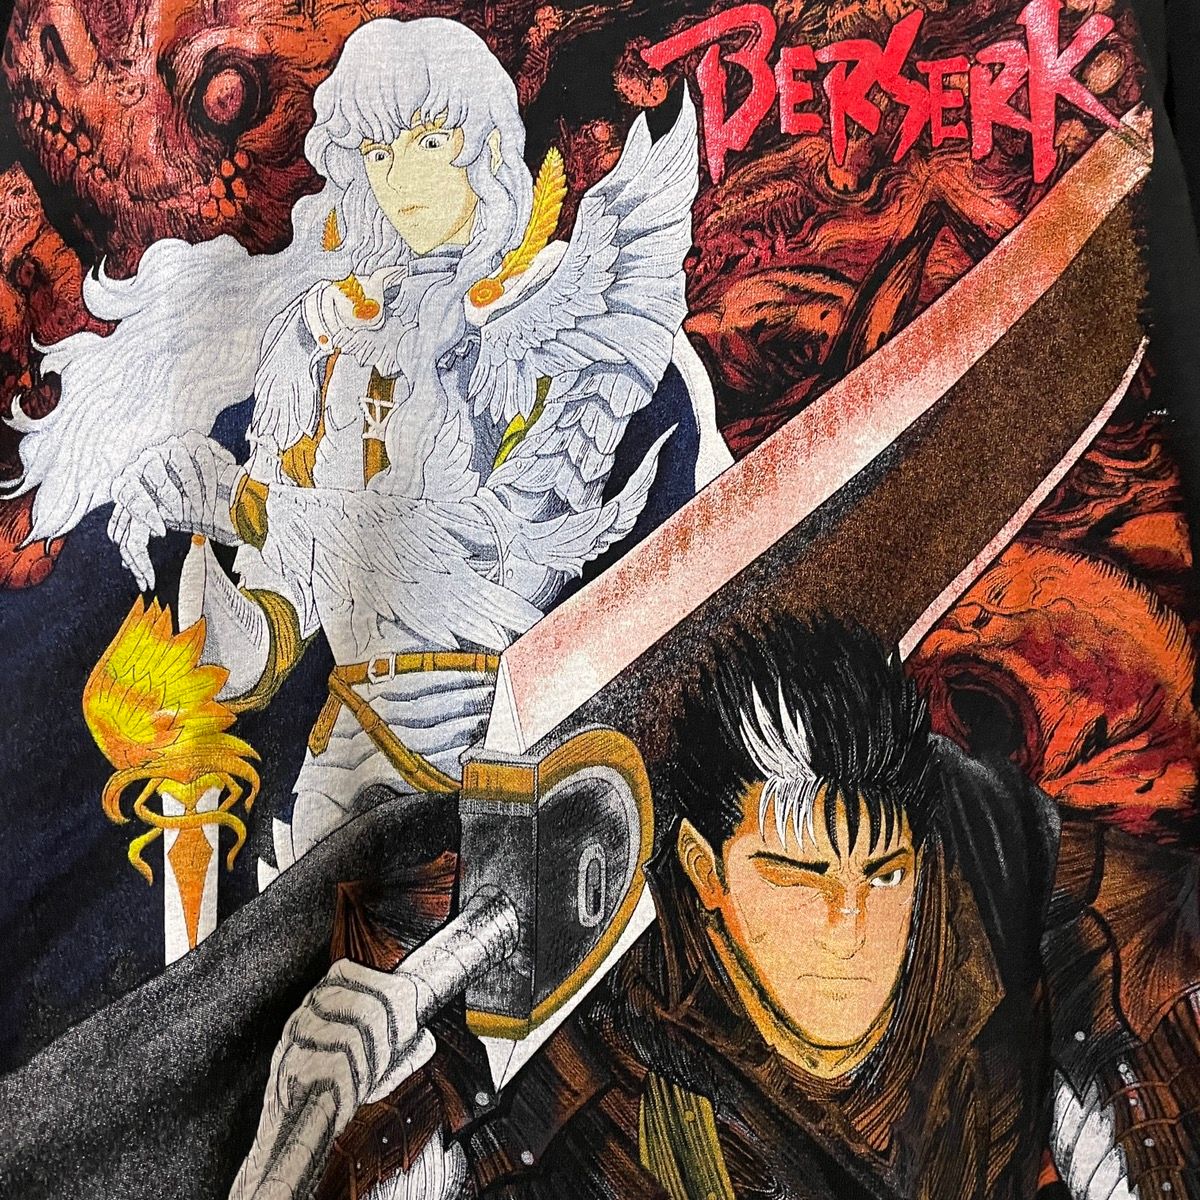 Berserk 1997 Anime Japanese Manga Classic Graphic T-shirt